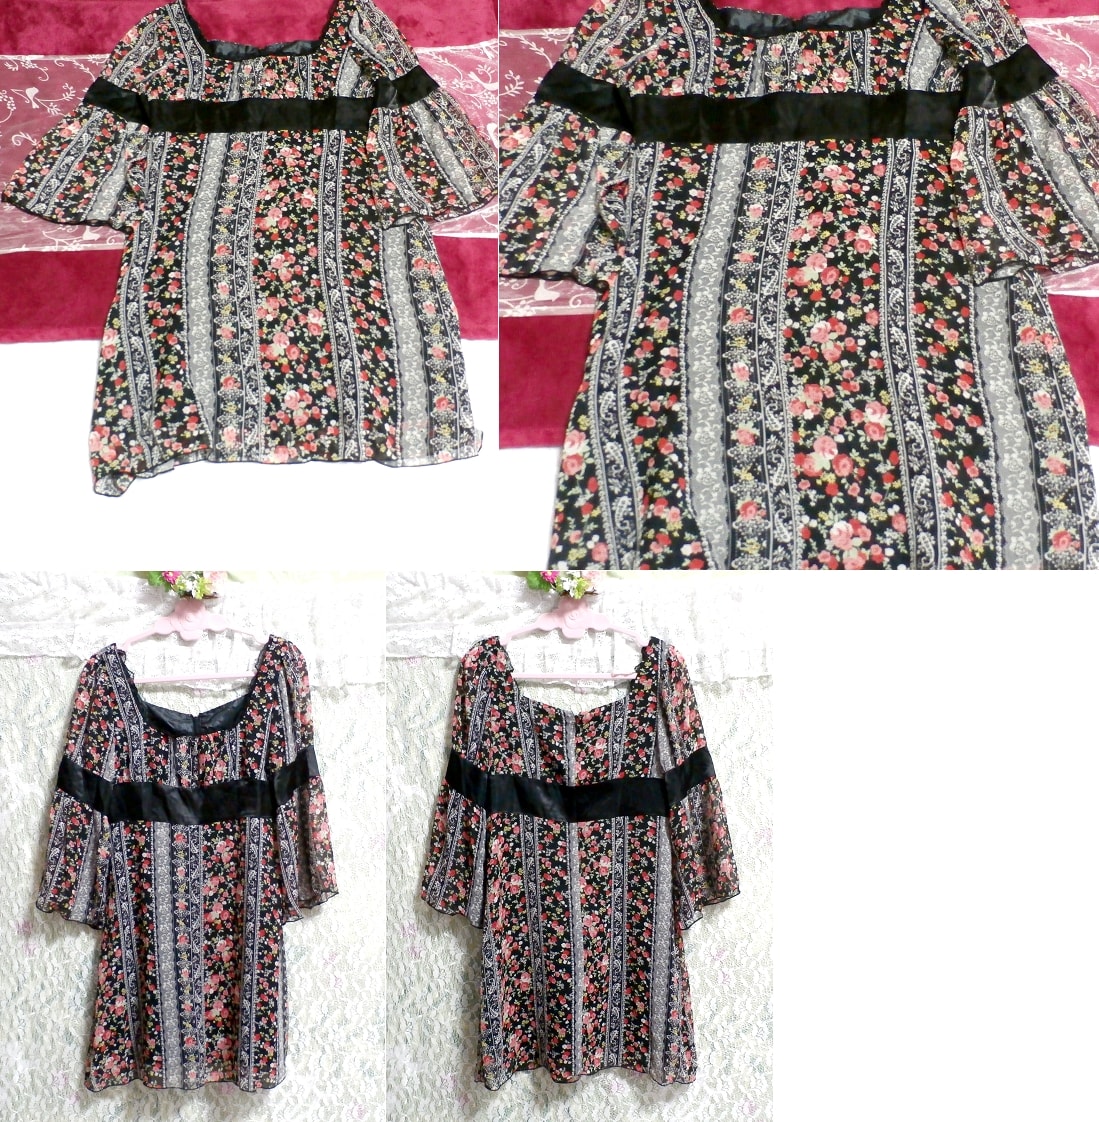 黒帯花柄ネグリジェチュニック Black flower pattern negligee tunic dress, チュニック, 長袖, Mサイズ